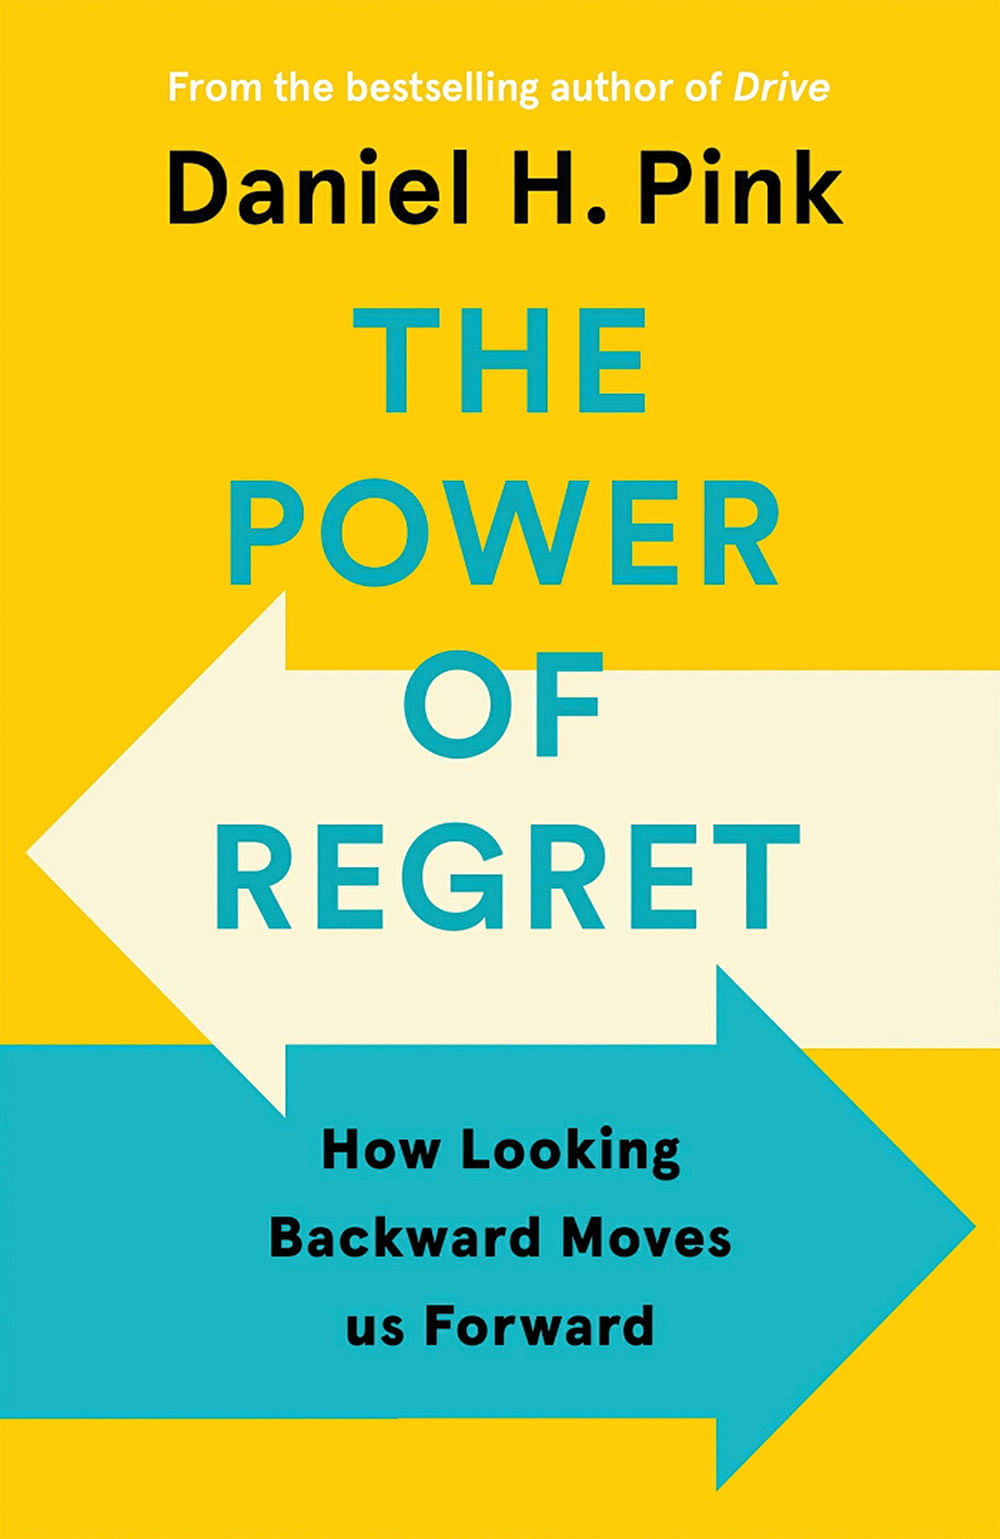 புத்தகத்தின் பெயர்:
The Power of Regret
ஆசிரியர்:
Daniel H. Pink (Author)
பதிப்பாளர்:
Canongate Books